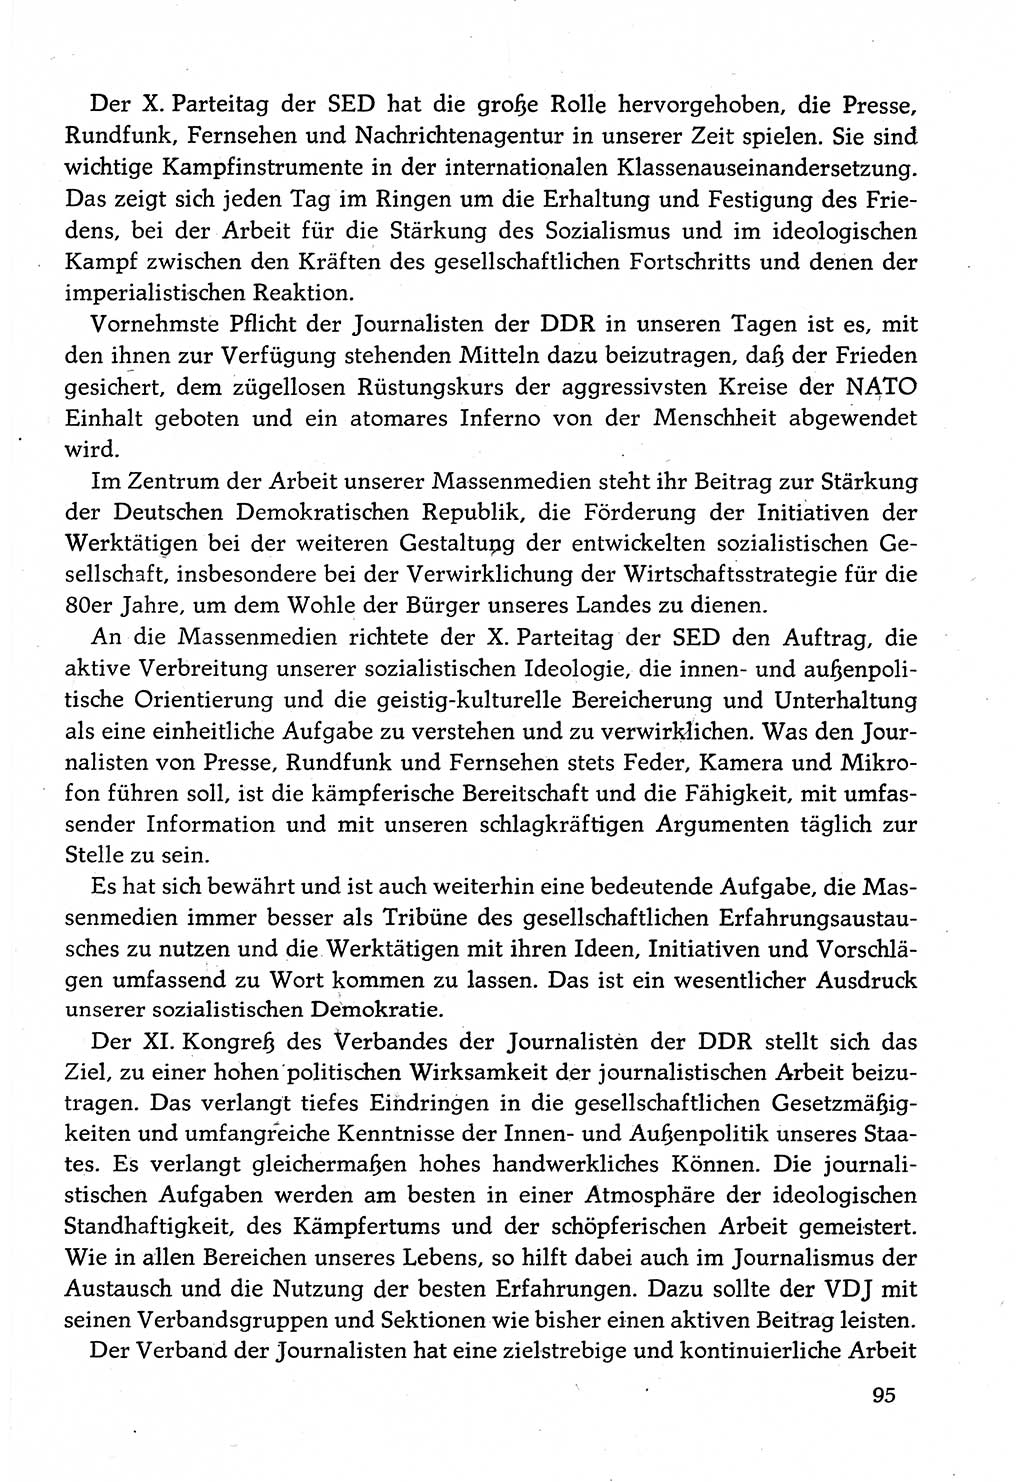 Dokumente der Sozialistischen Einheitspartei Deutschlands (SED) [Deutsche Demokratische Republik (DDR)] 1982-1983, Seite 95 (Dok. SED DDR 1982-1983, S. 95)